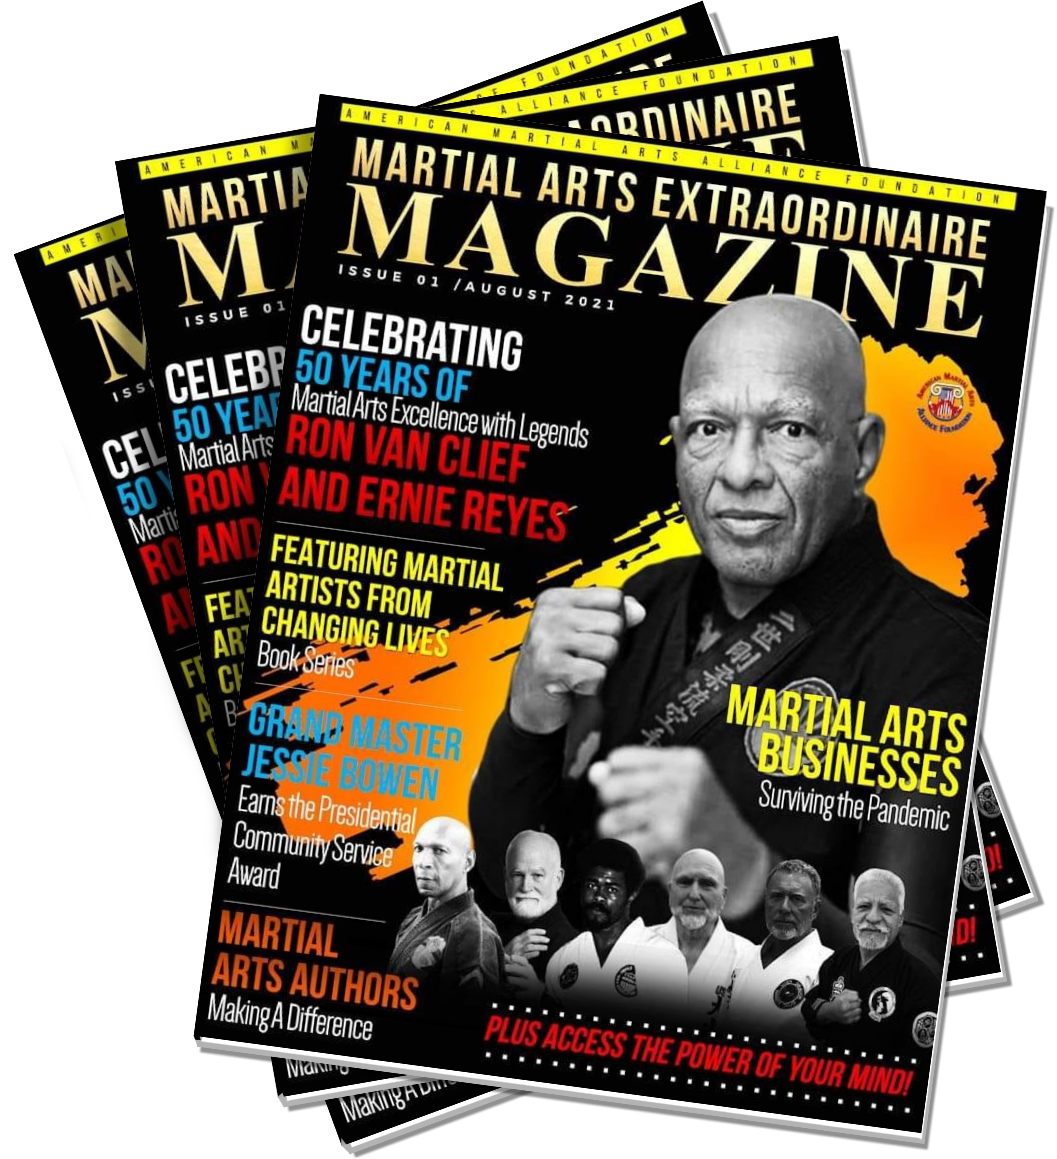 Martial Arts Extraordinaire Magazine - Ron Van Clief Edition -Printed Copy